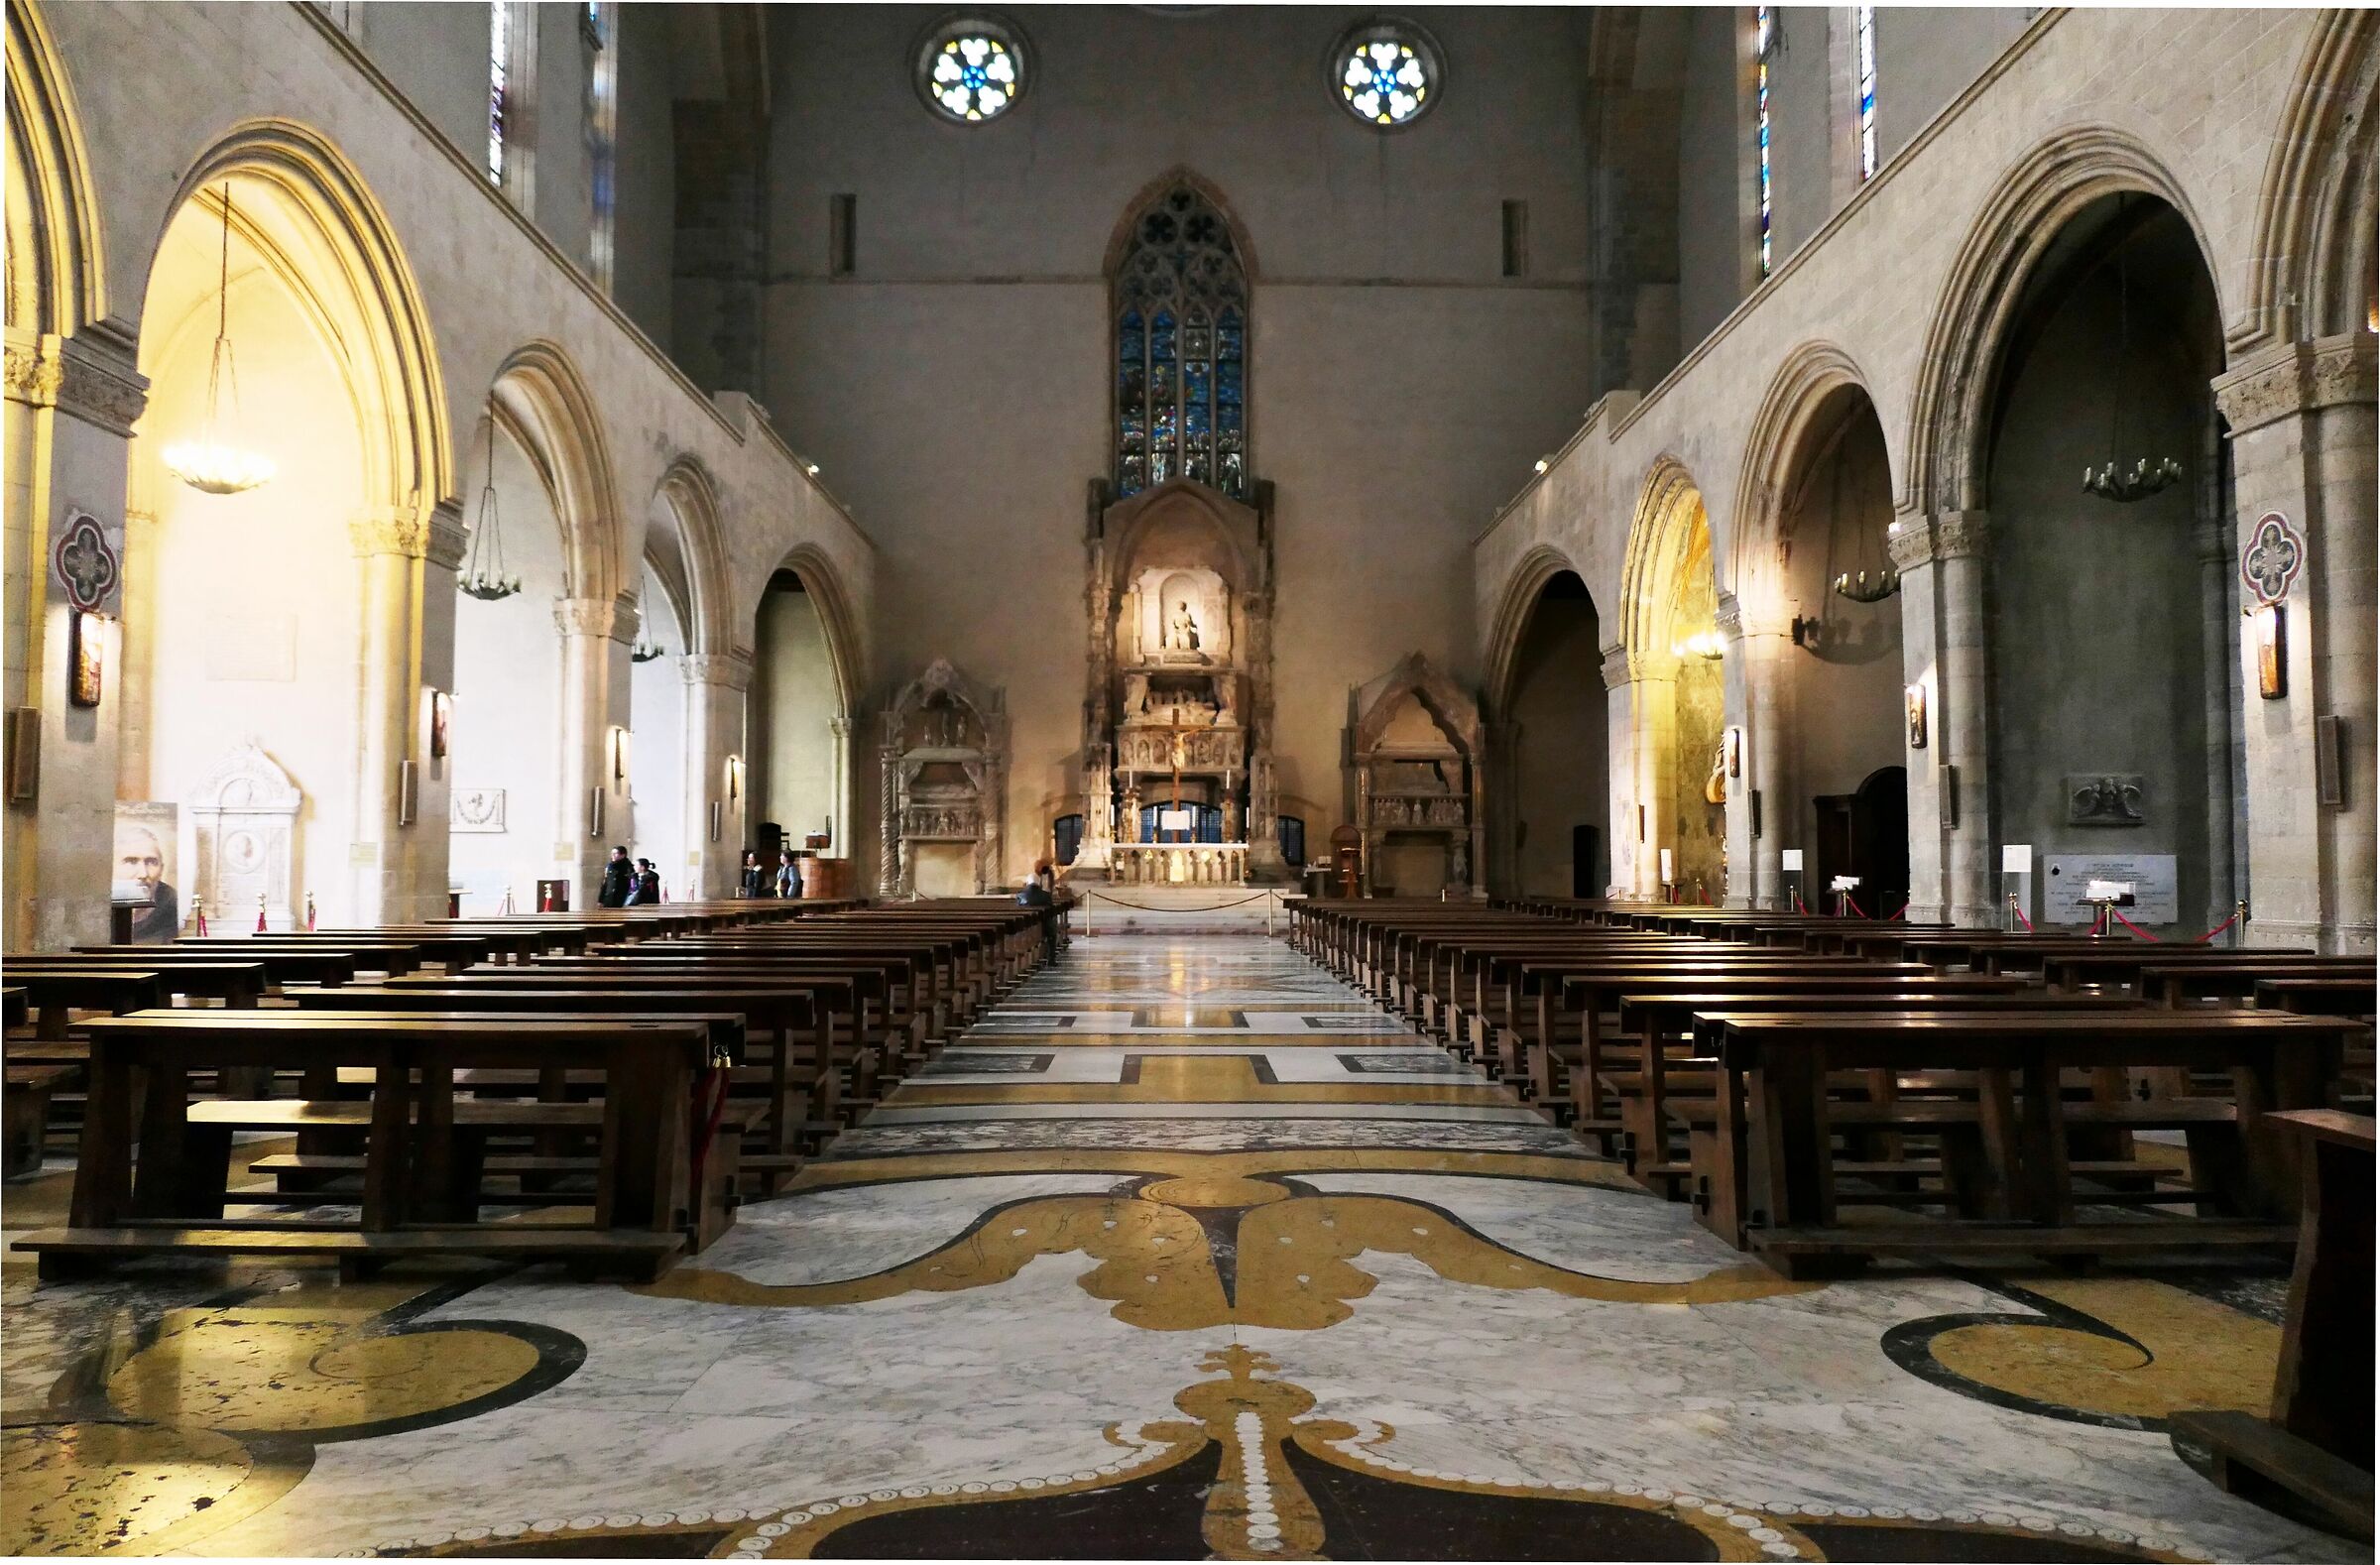 St. Clare's Basilica...